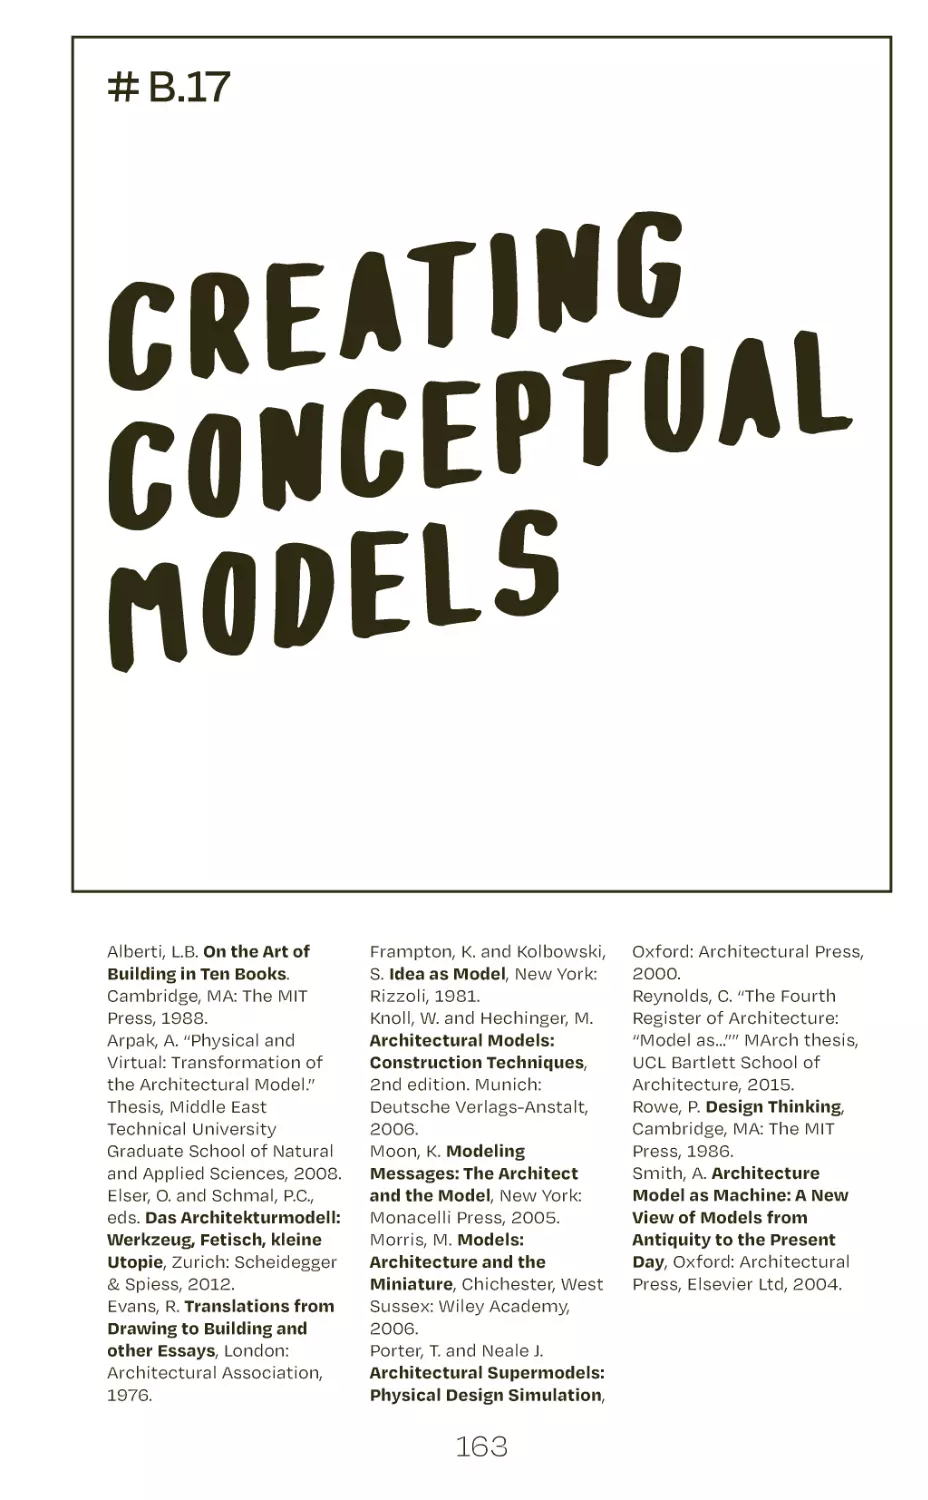 # B.17 creating conceptual models